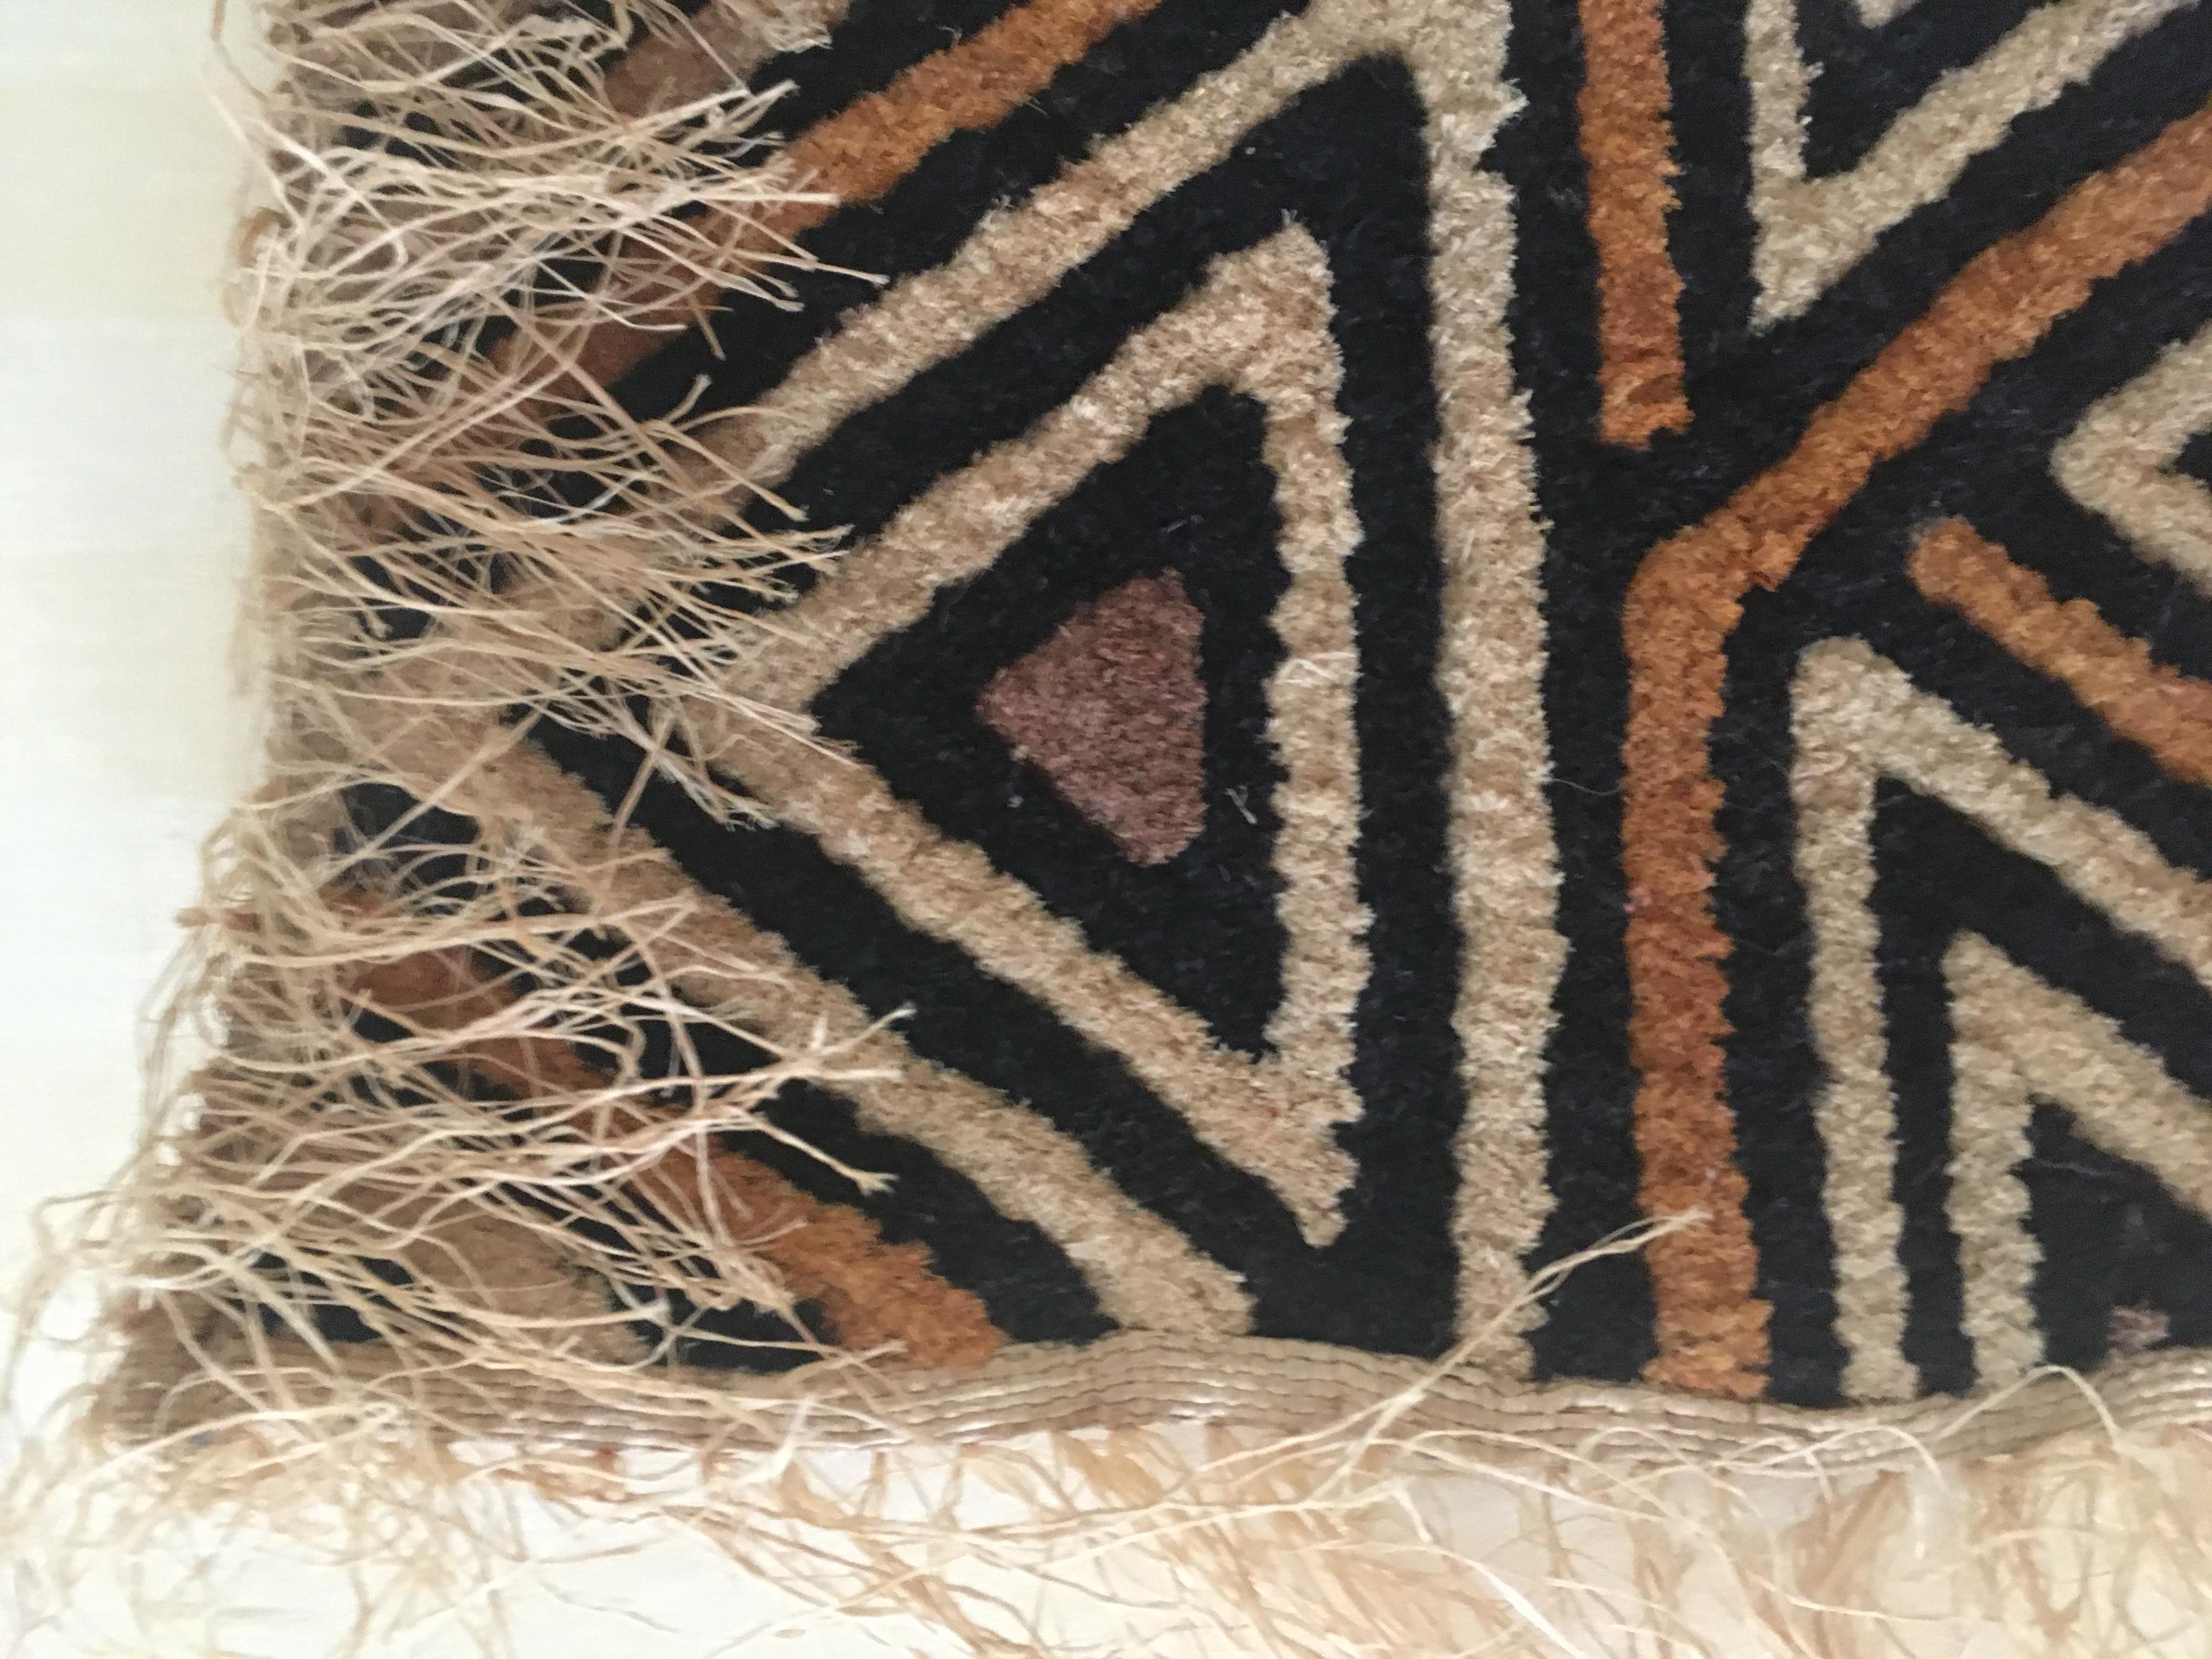 Le velours du kasai est une pièce d'art textile captivante provenant de la région du Kasaï, en République démocratique du Congo. Fabriquée à la main dans les années 1960, cette tenture murale en tissu Kuba témoigne du riche patrimoine culturel et